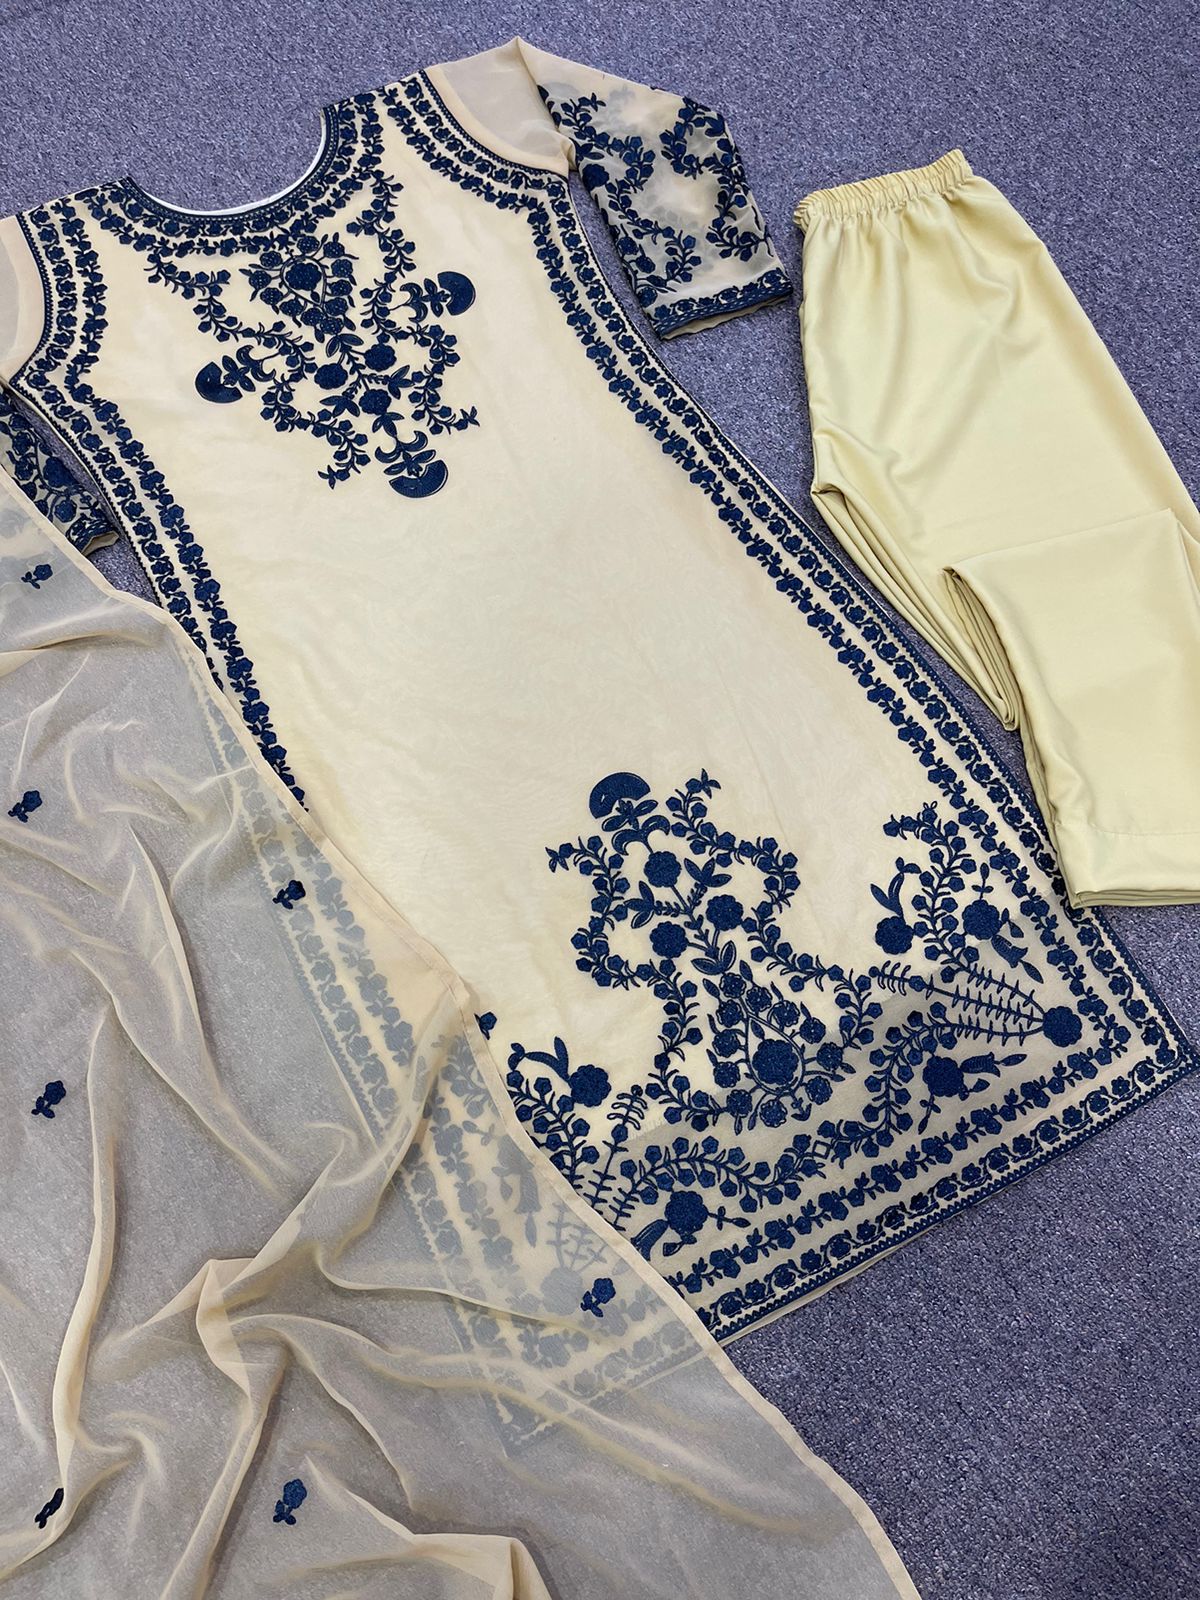 Festive Wear Cream Color Embroidery Work Salwar Suit